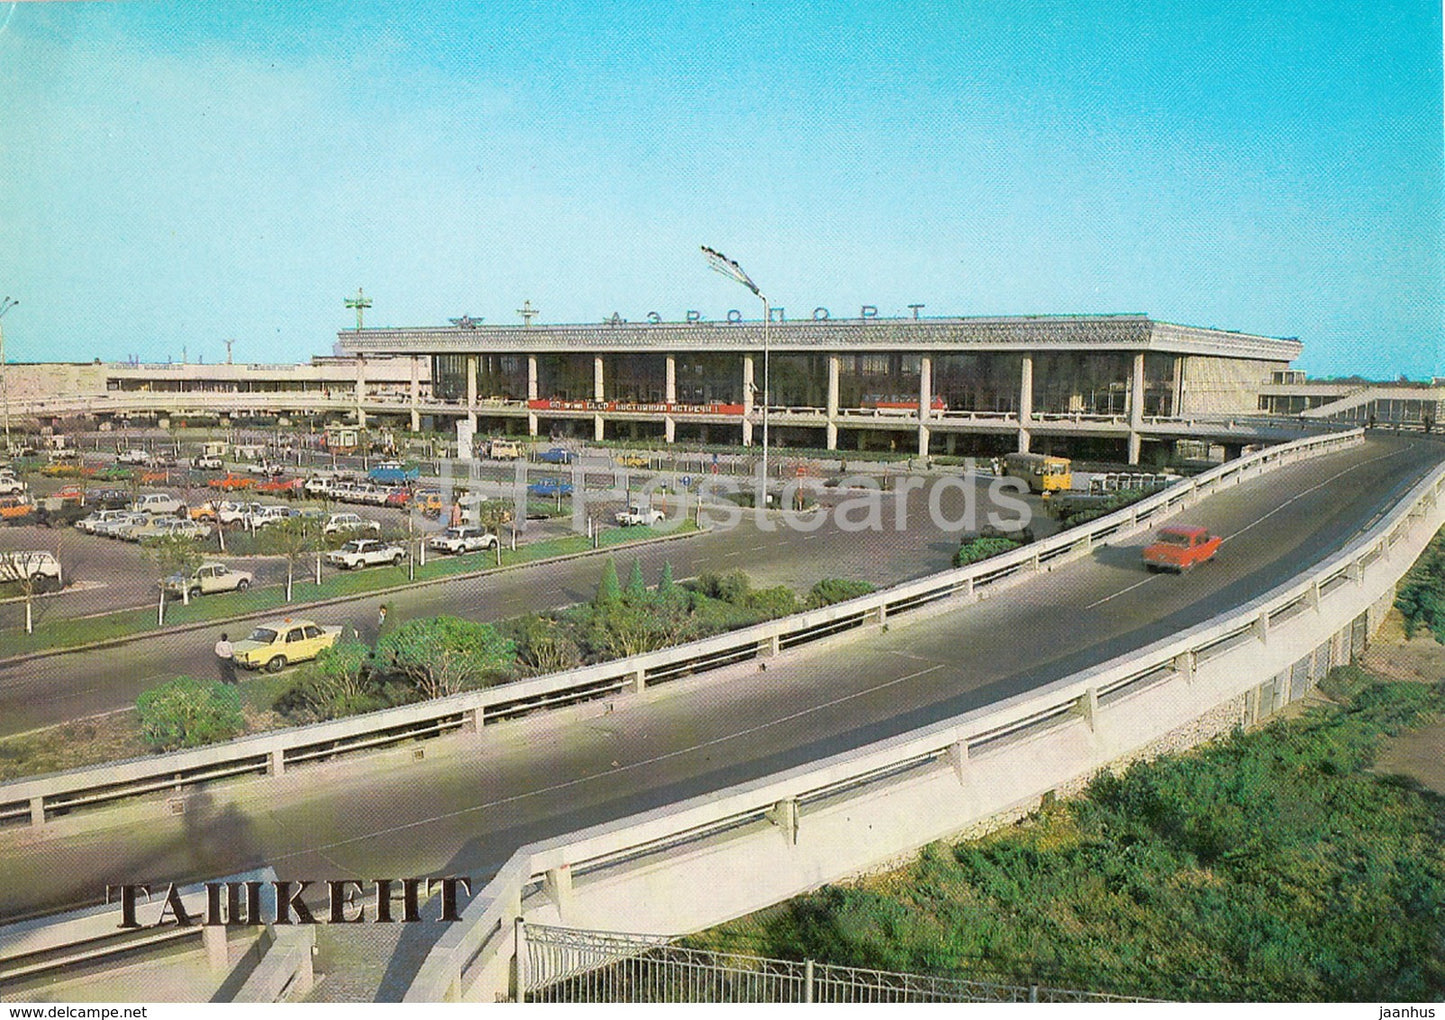 Tashkent - Airport - 1983 - Uzbekistan USSR - unused - JH Postcards